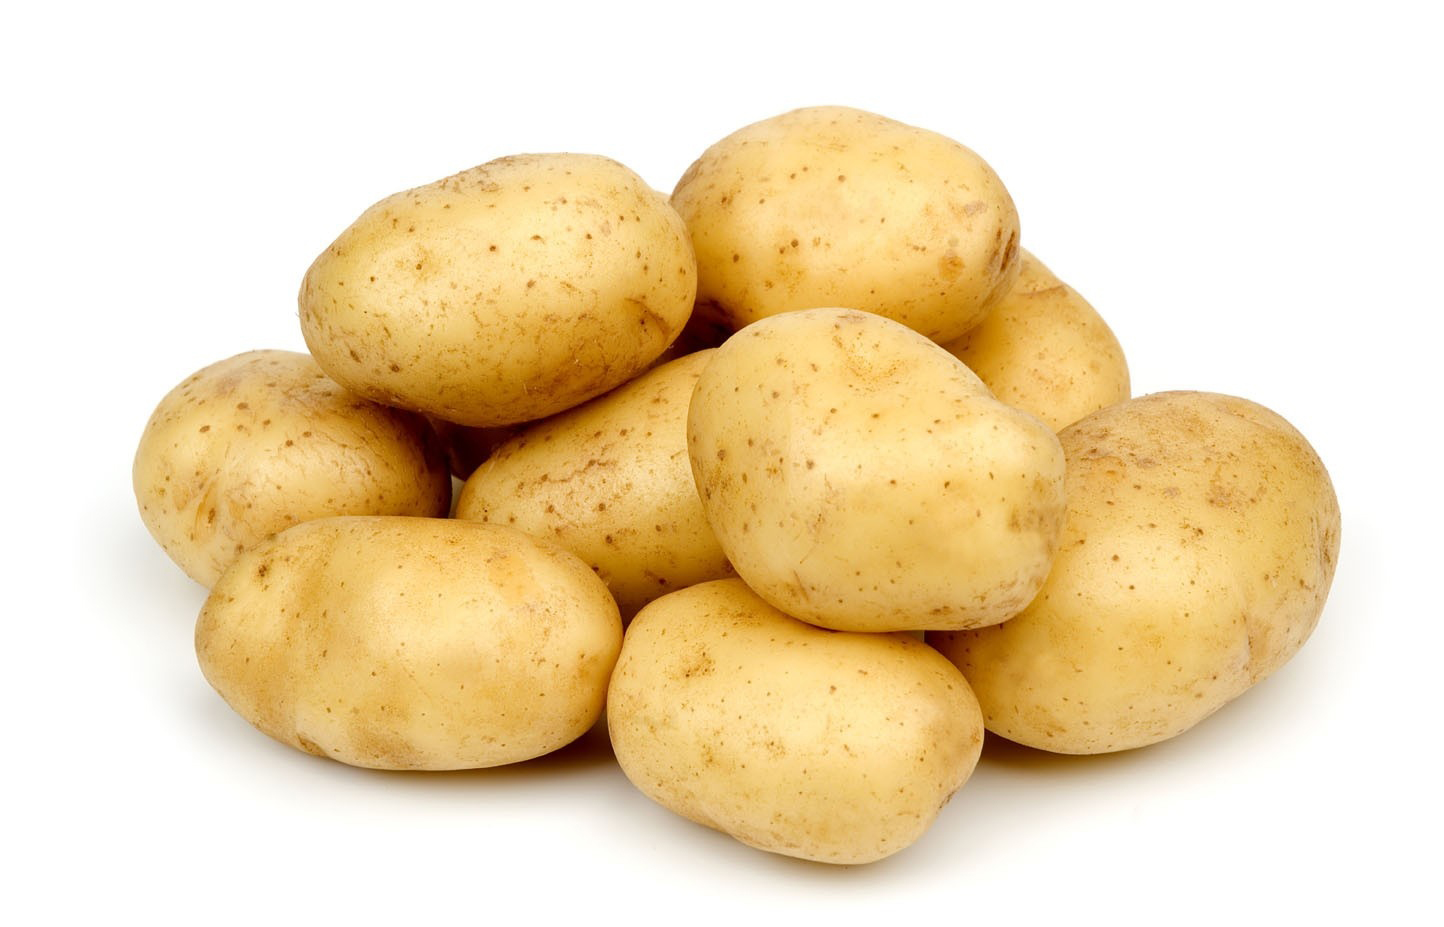 البطاطا.. تمد الجسم بالطاقة لكن فوائدها الصحية أكبر بكثير | الإذاعة  الجزائرية